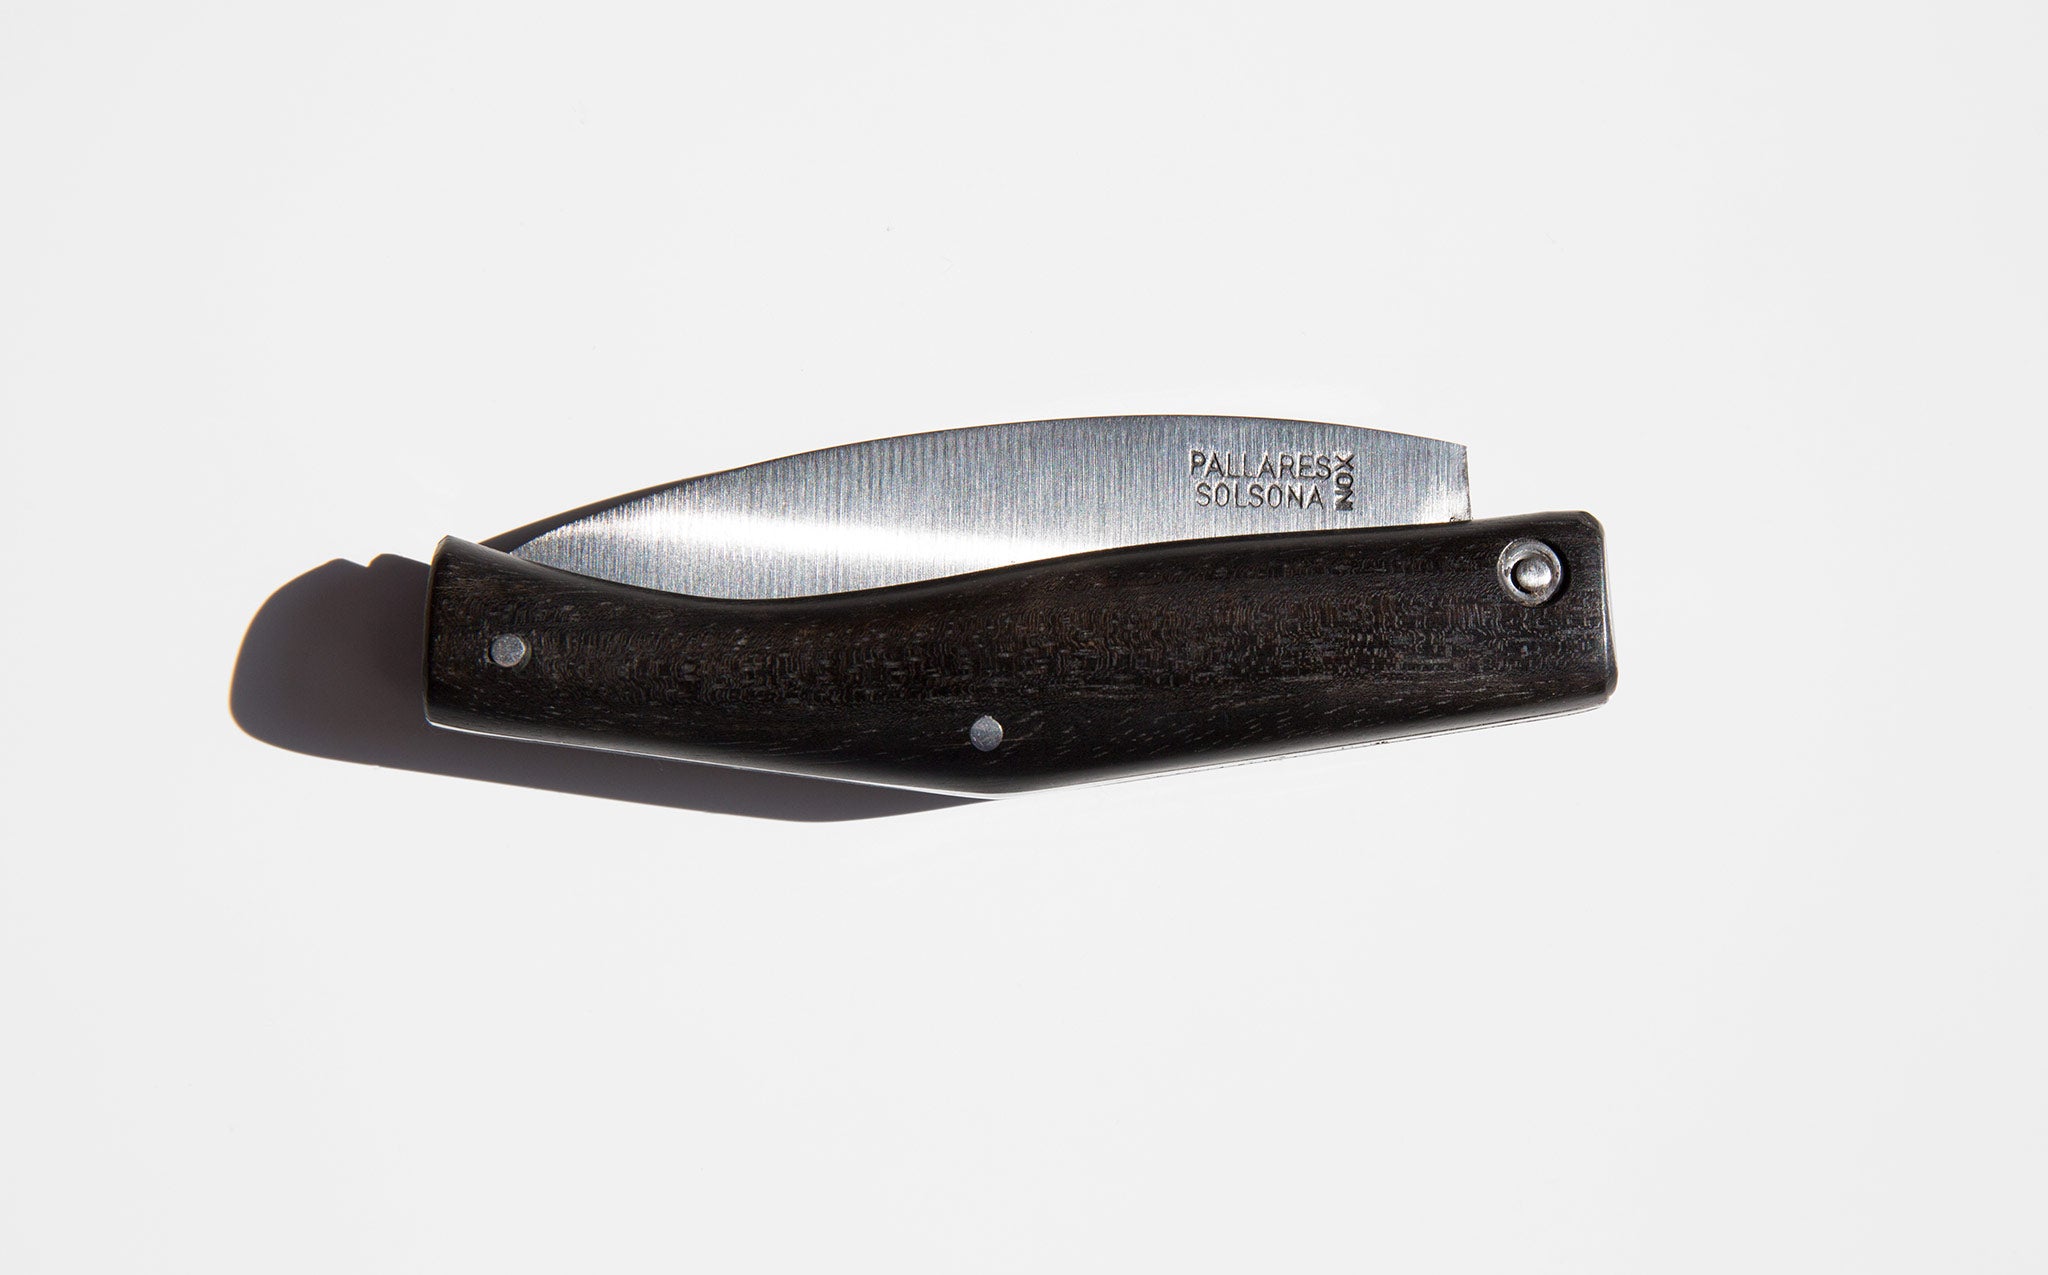 Pallarés Solsona Ebony Wood Pocket Knife